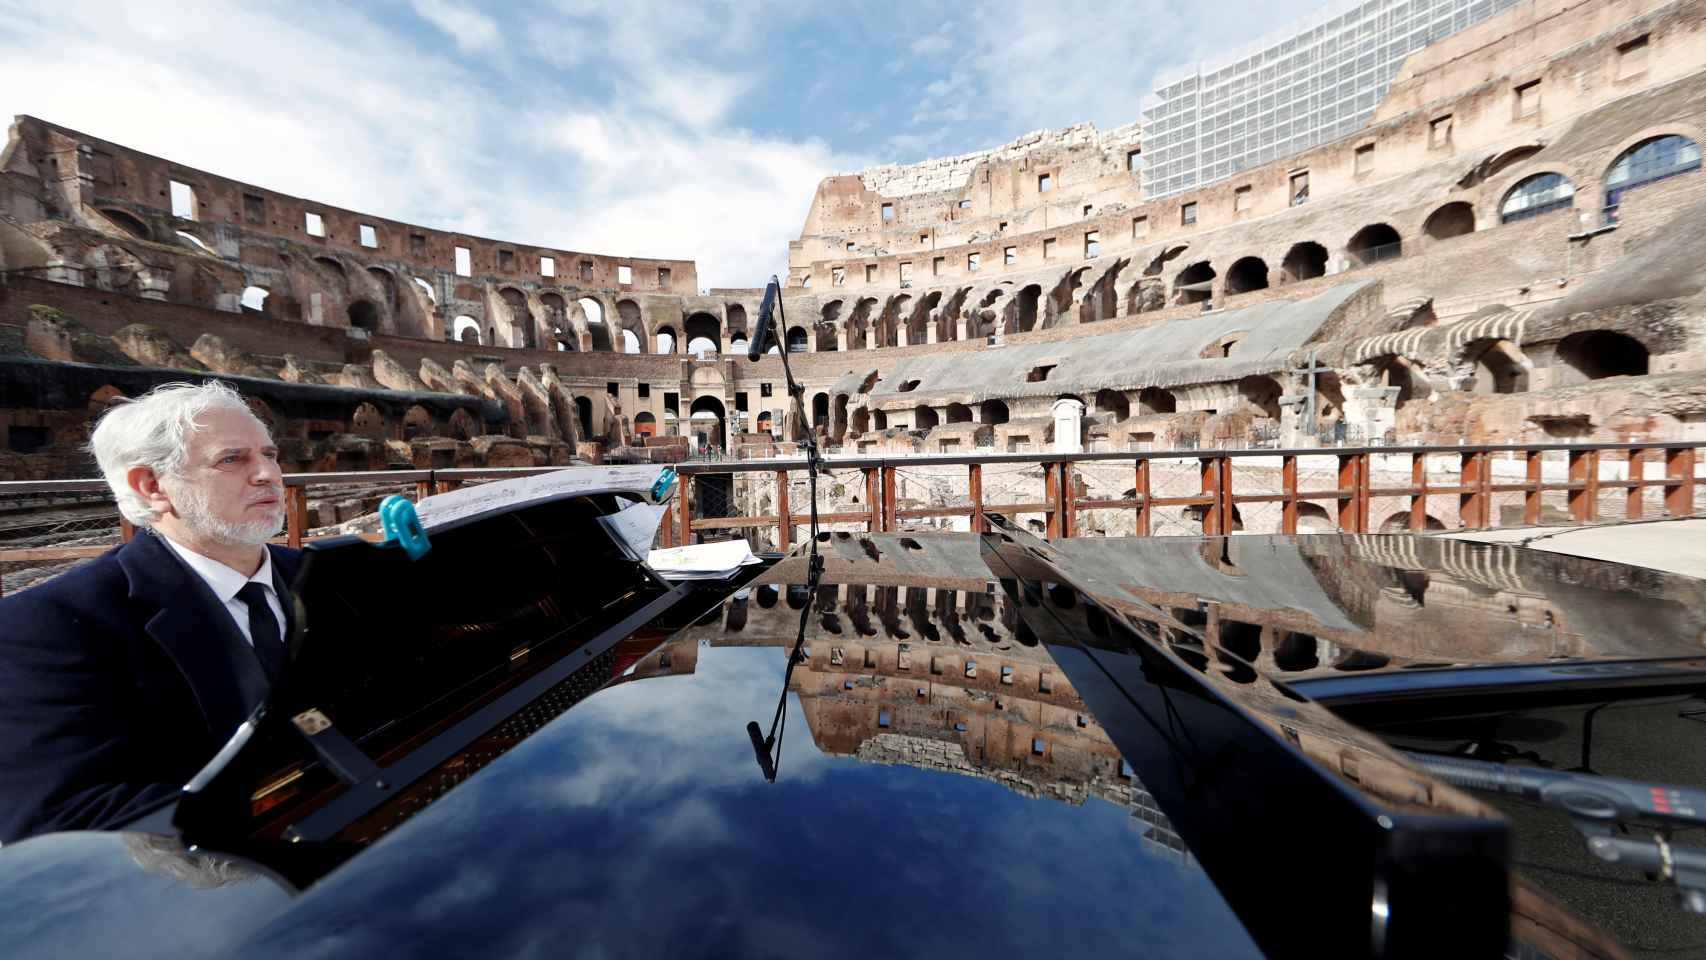 Un pianista actúa en el Coliseo después de tres mese de cierre por la pandemia.